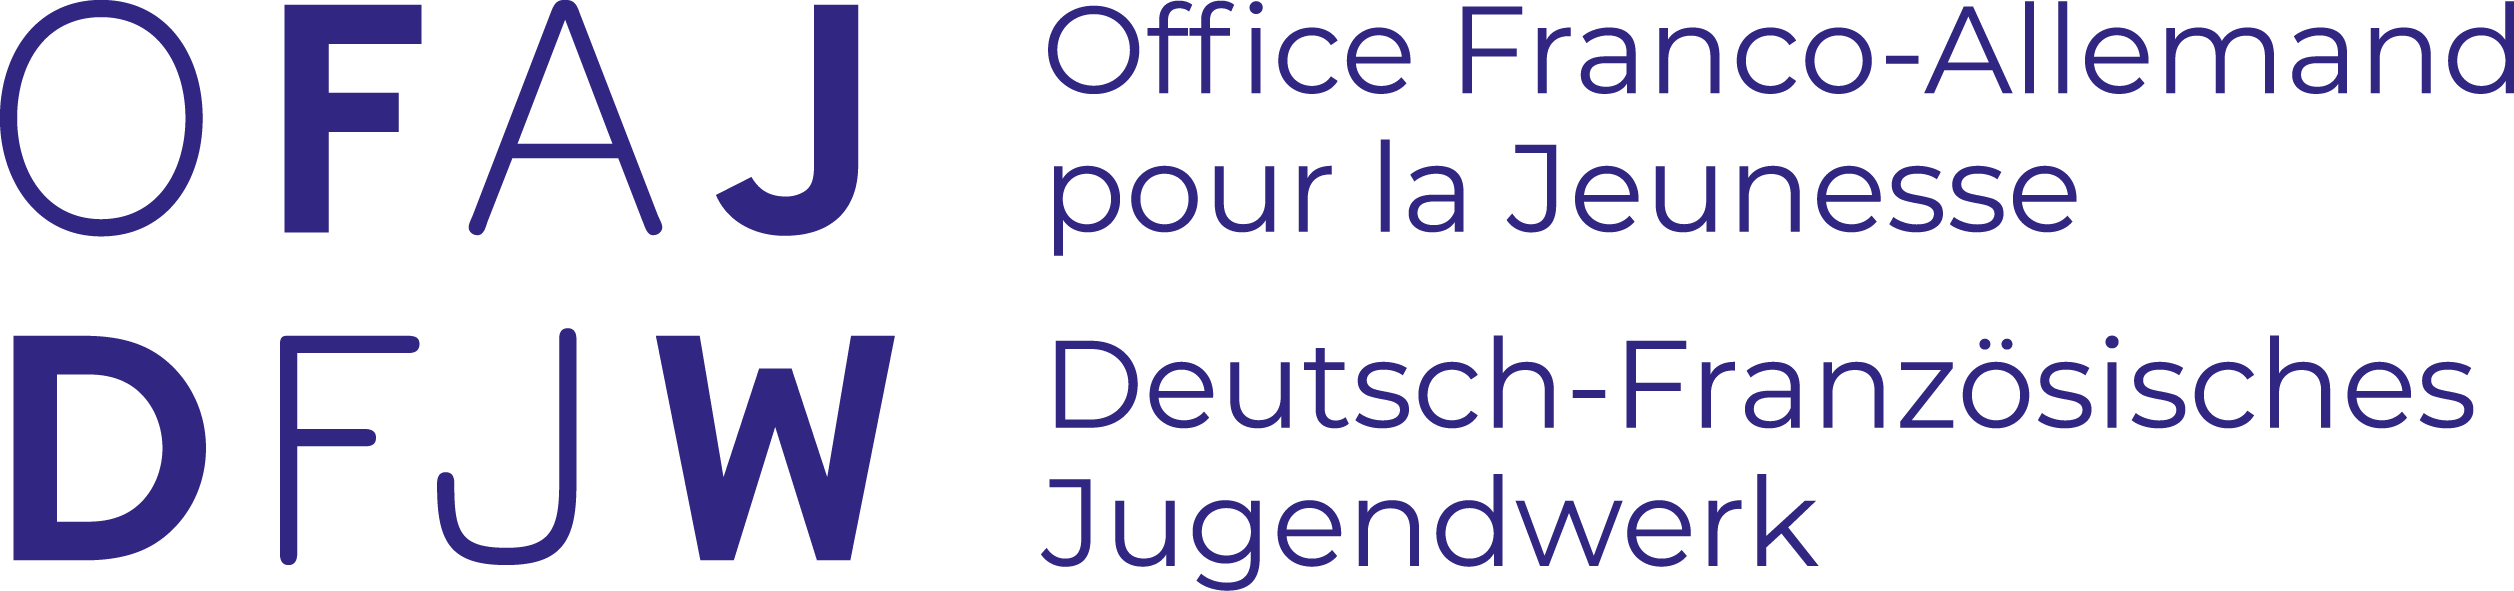 logo OFAJ